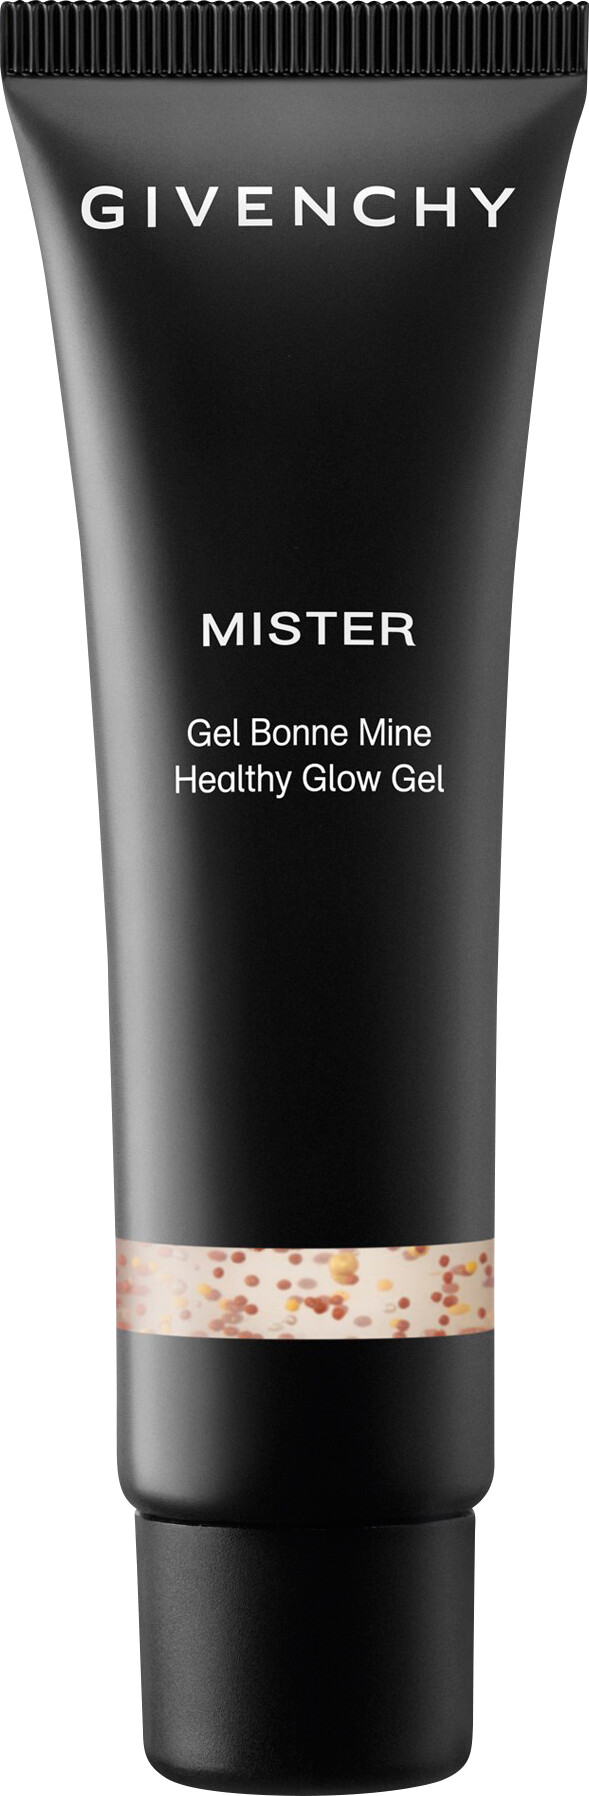 mister healthy glow gel